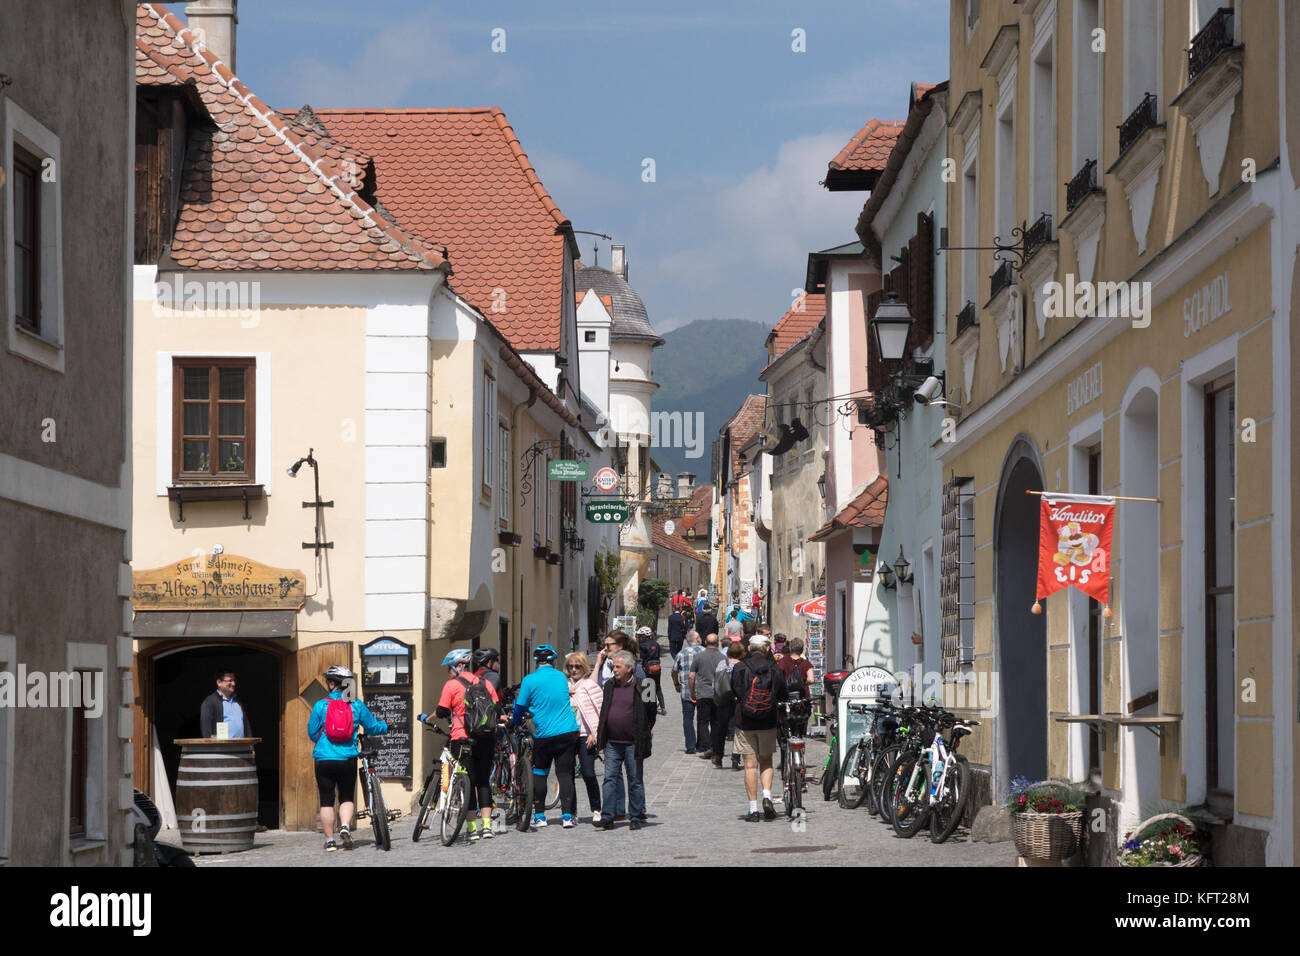 Les touristes faisant leur chemin le long de la Hauptstraße (rue principale) de Dürnstein, l'une des destinations touristiques les plus populaires dans la région de Wachau Banque D'Images